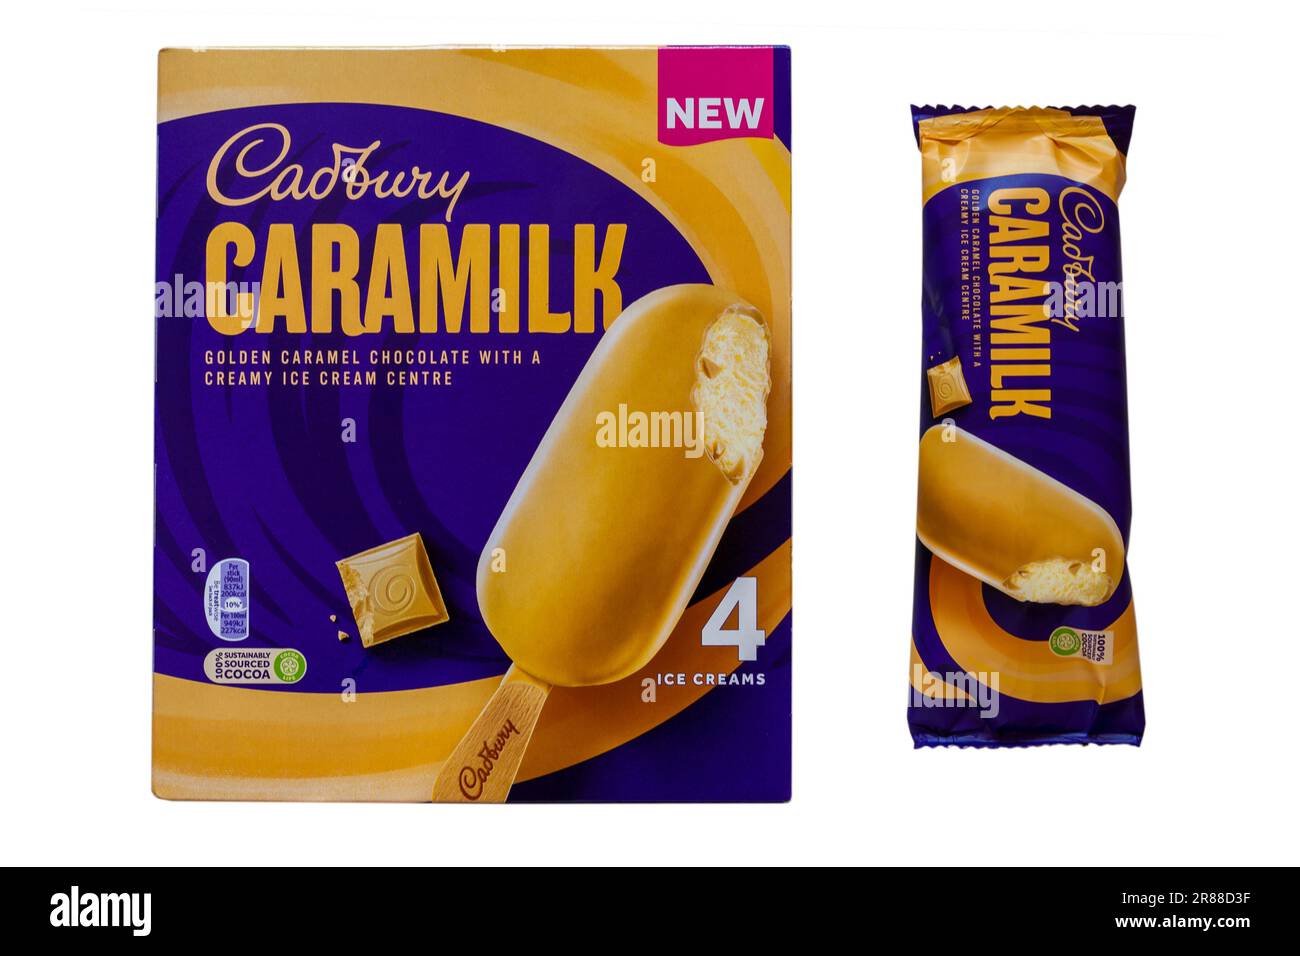 Scatola di gelato Cadbury Caramilk gelato gelato con uno rimosso isolato su sfondo bianco - cioccolato al caramello dorato con un centro cremoso gelato Foto Stock